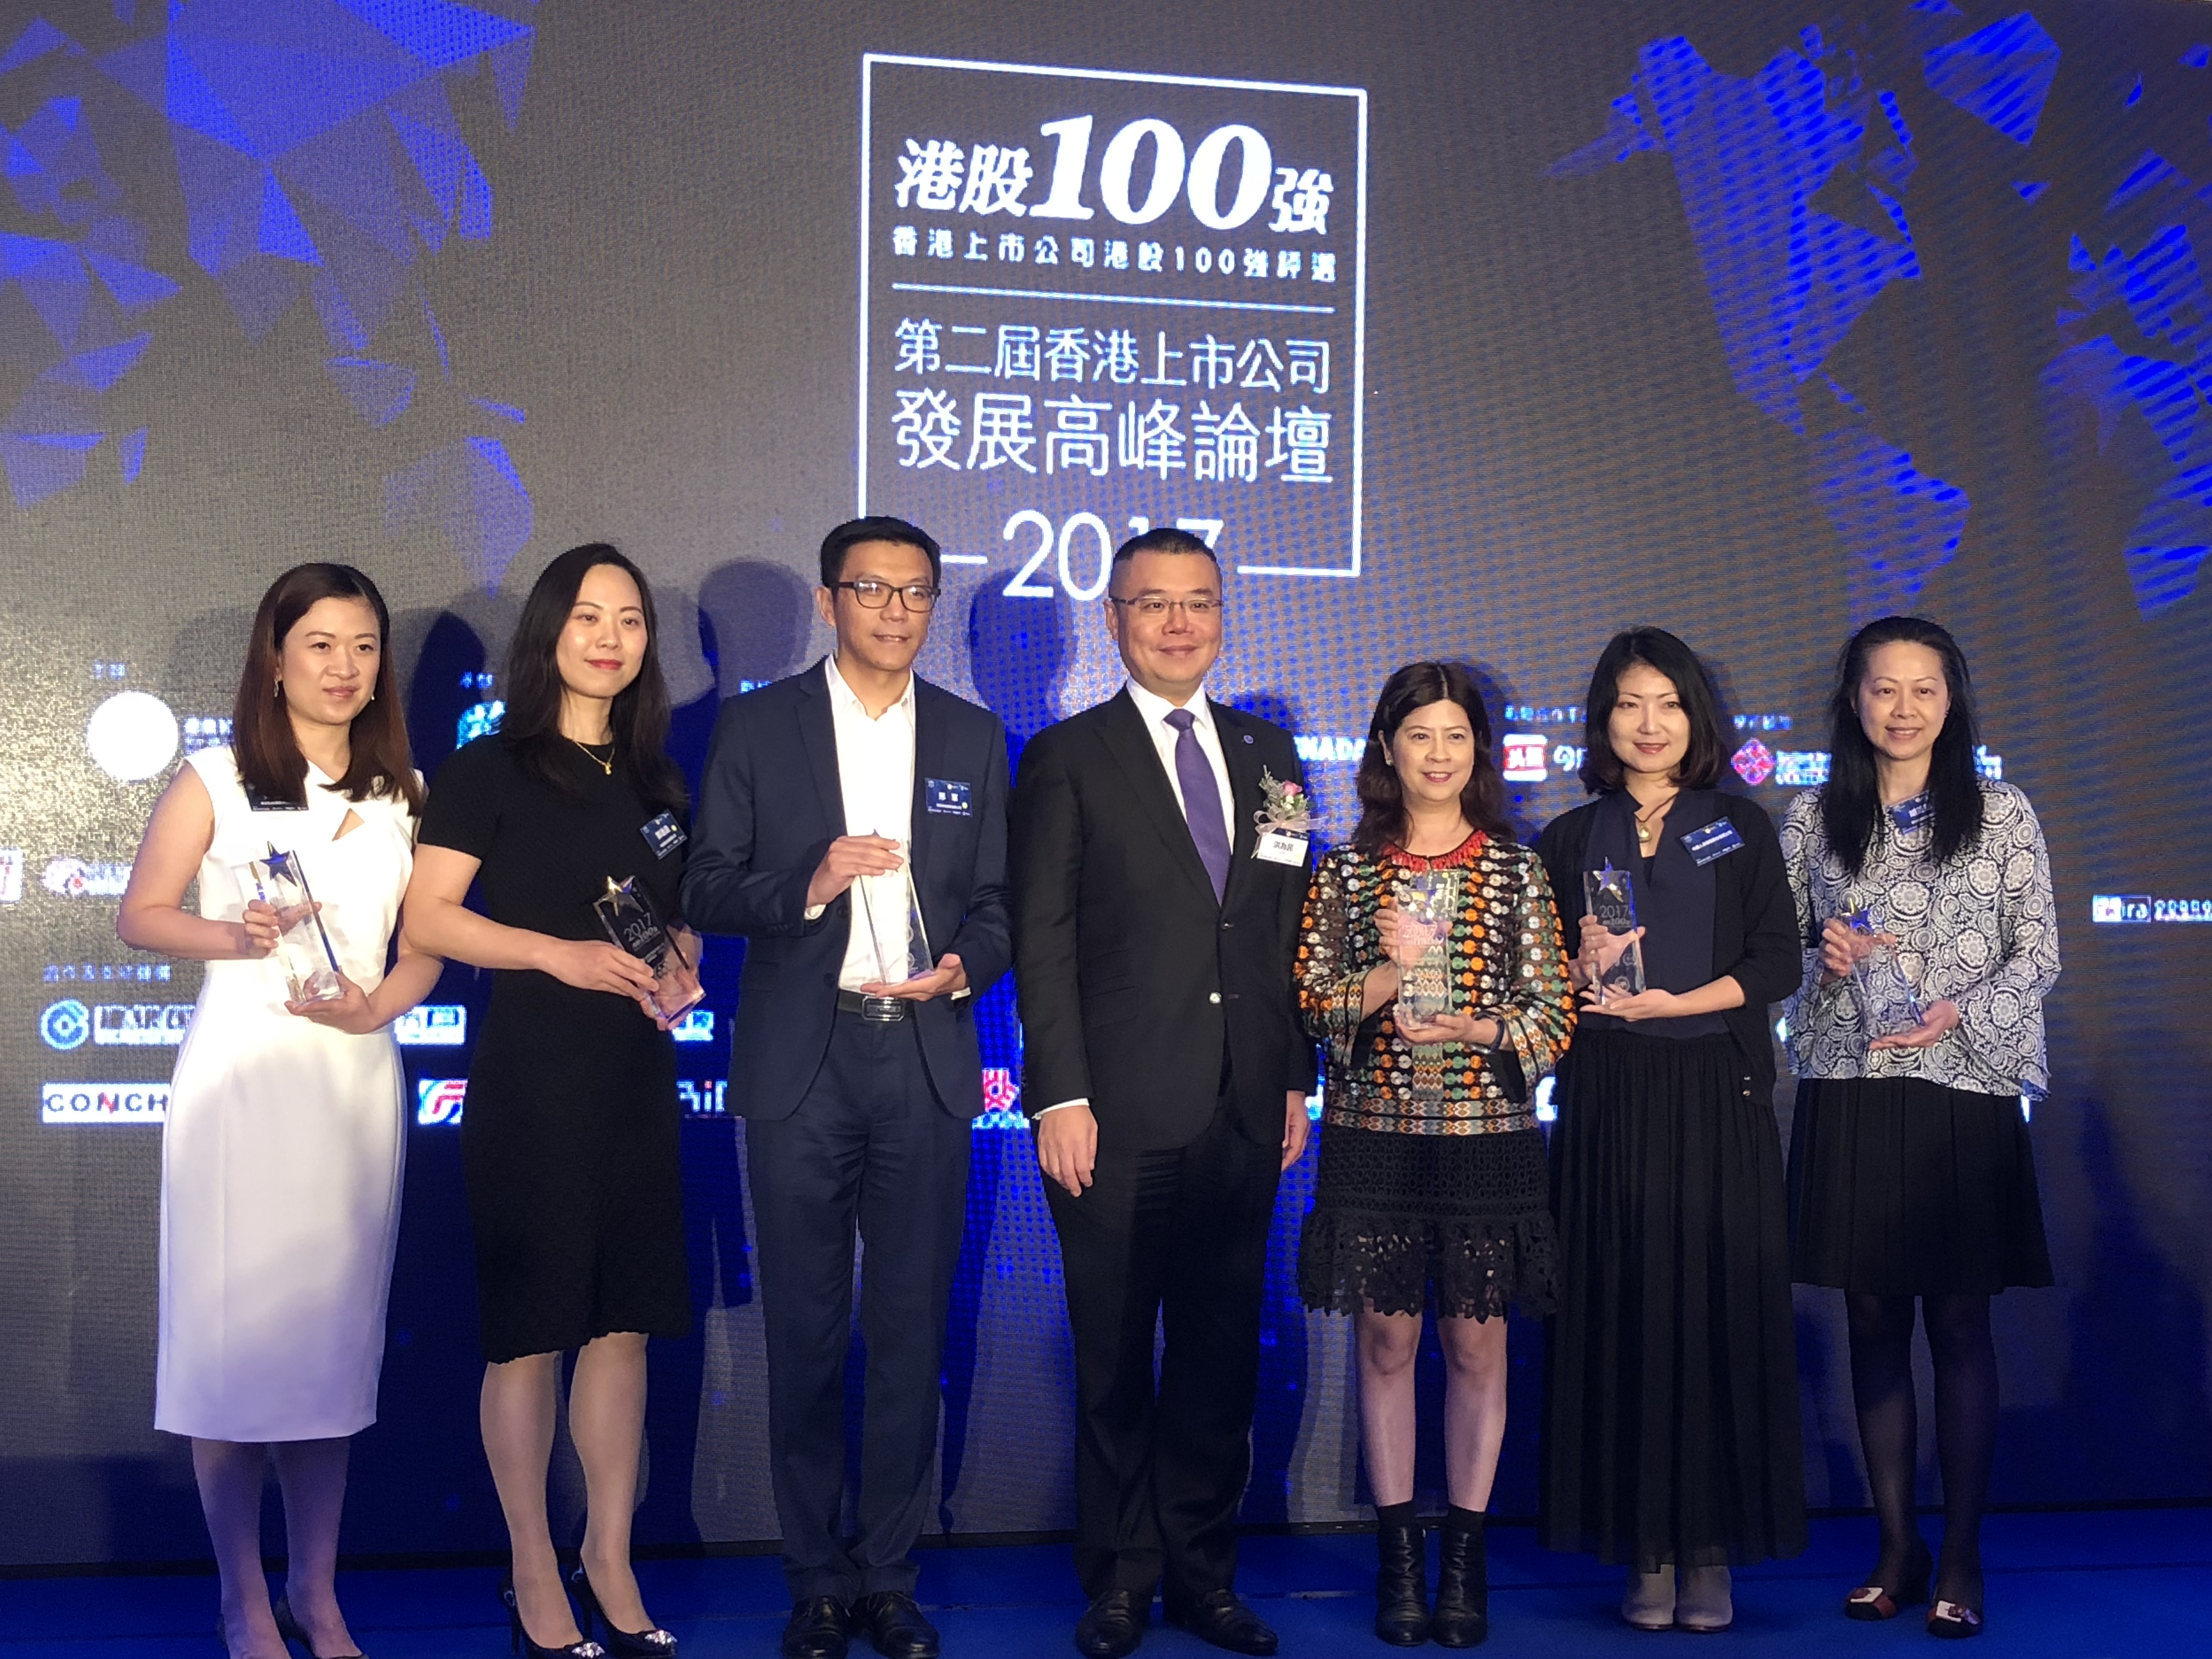 第二屆香港上市公司發展高峰論壇暨2017「港股100強」頒獎典禮